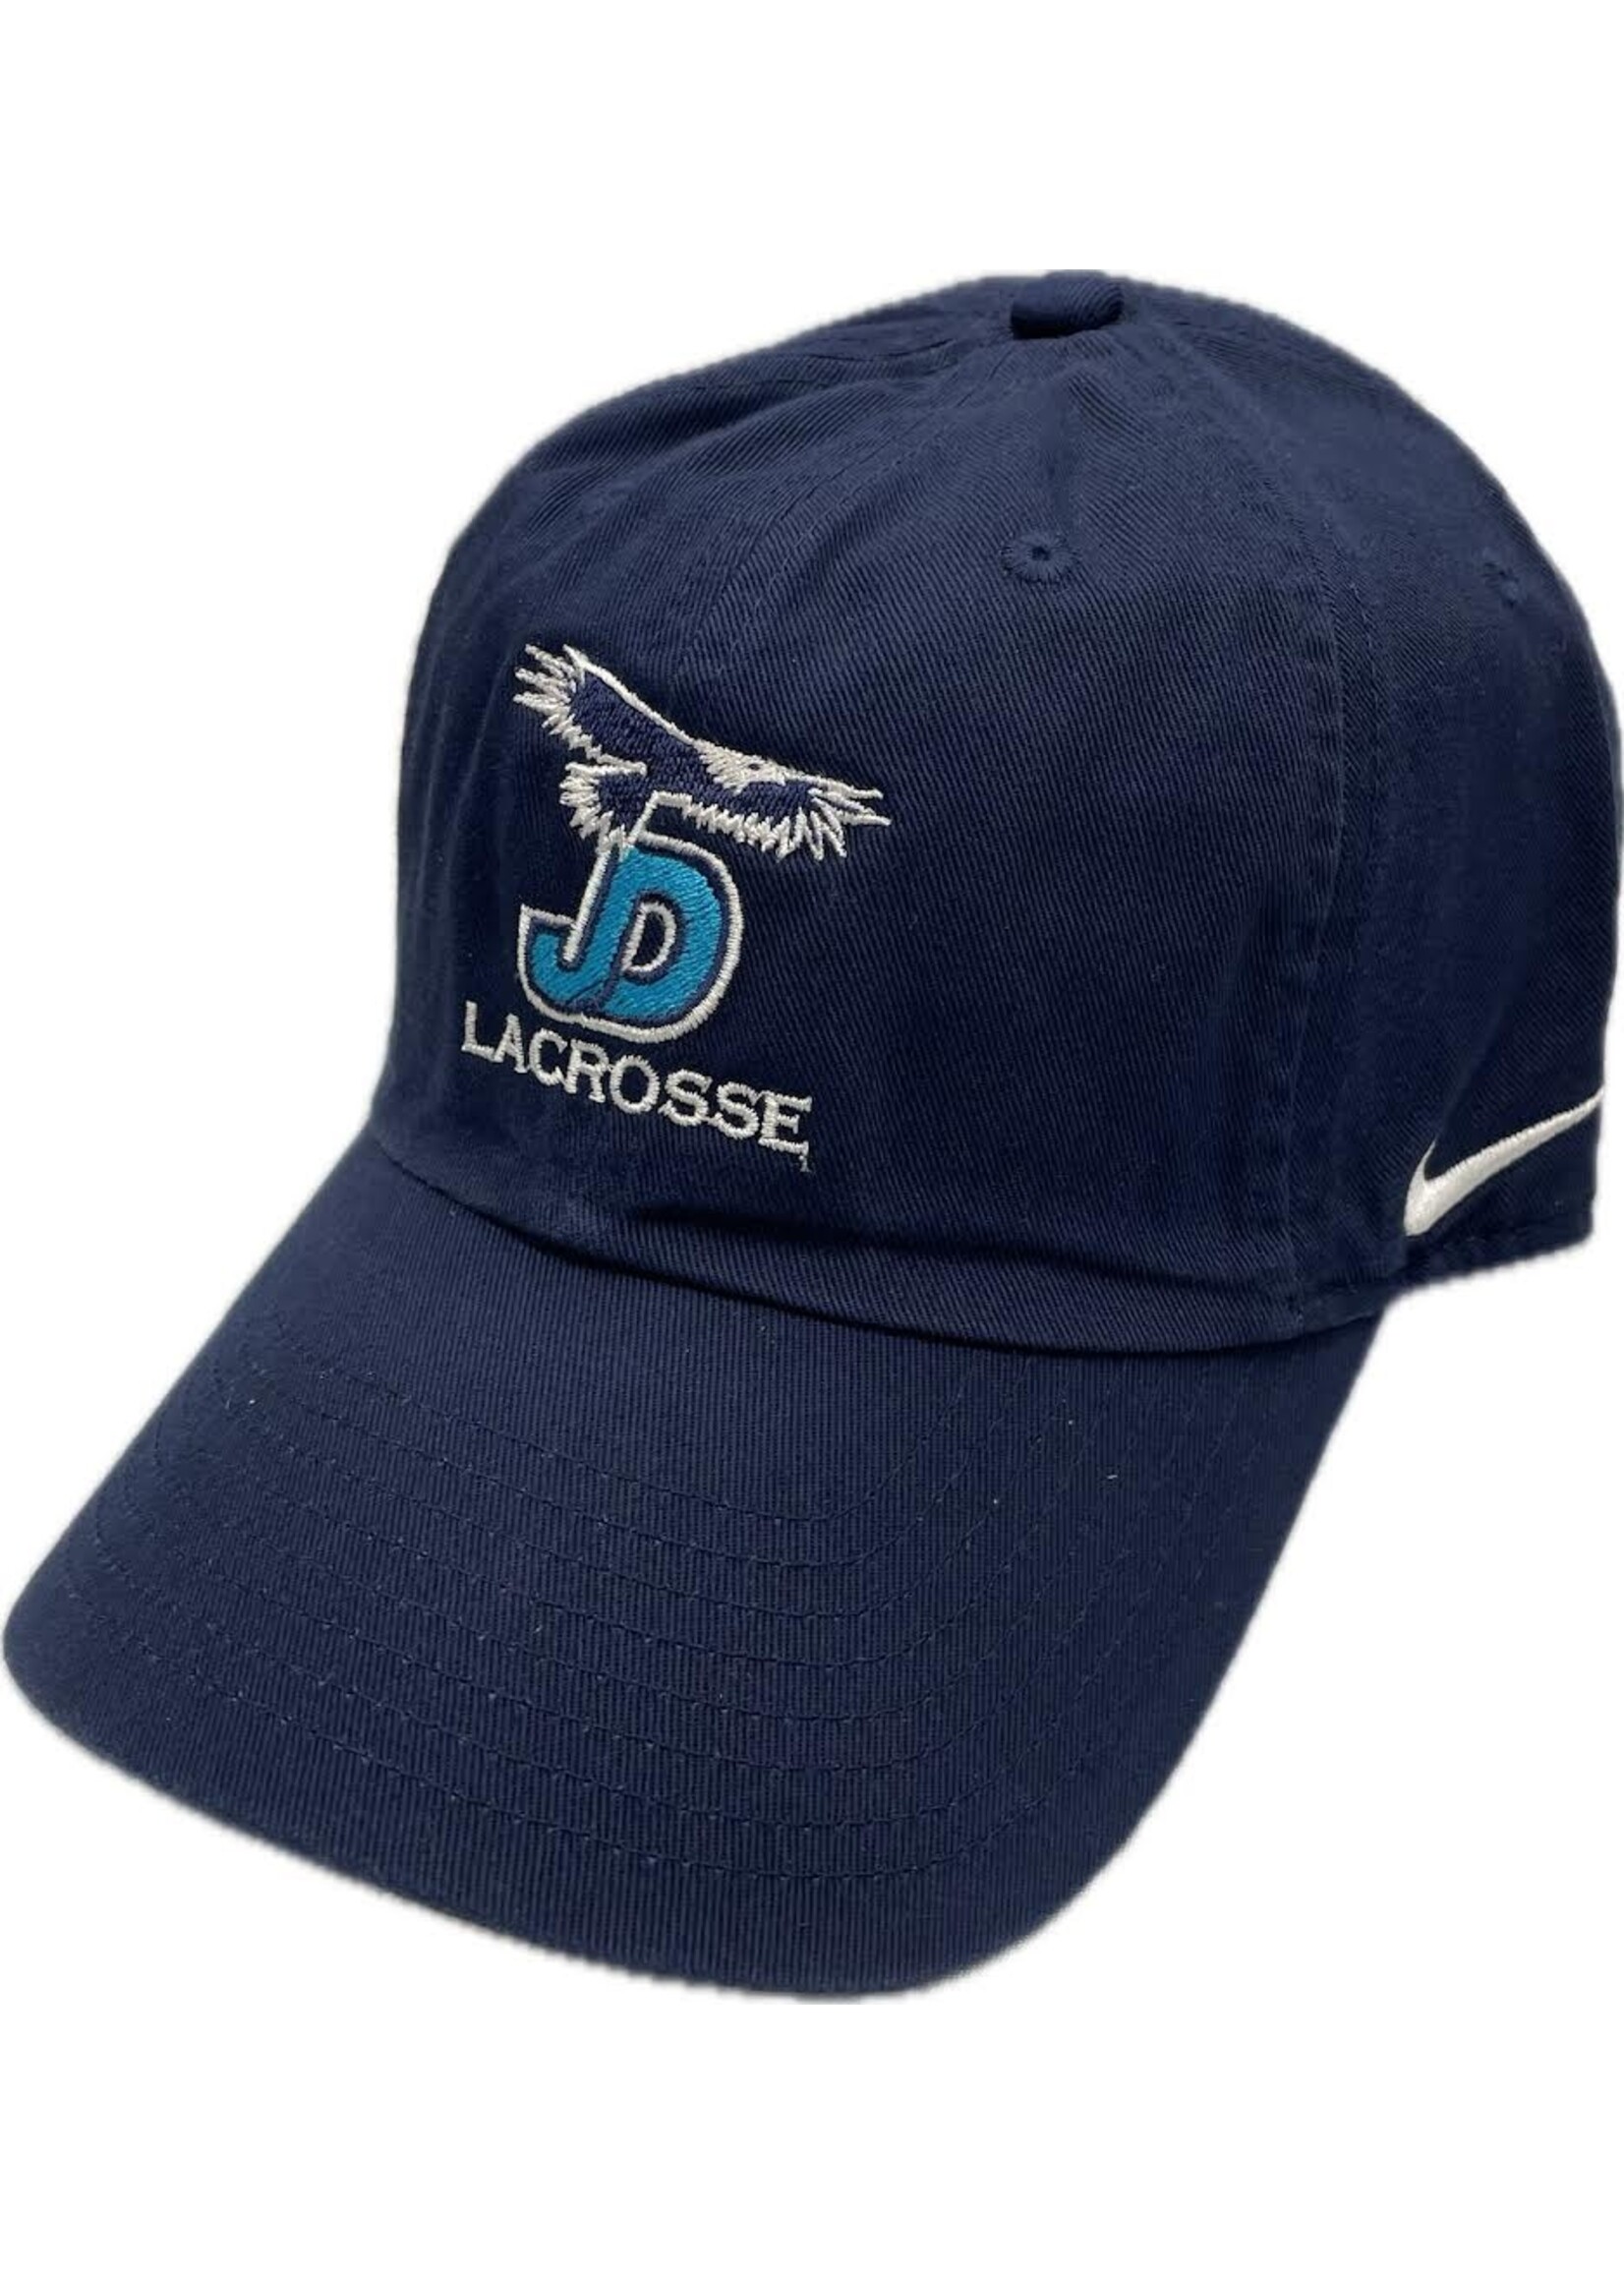 NON-UNIFORM Hat - Custom Nike Lacrosse Campus Cap - Men’s/Unisex